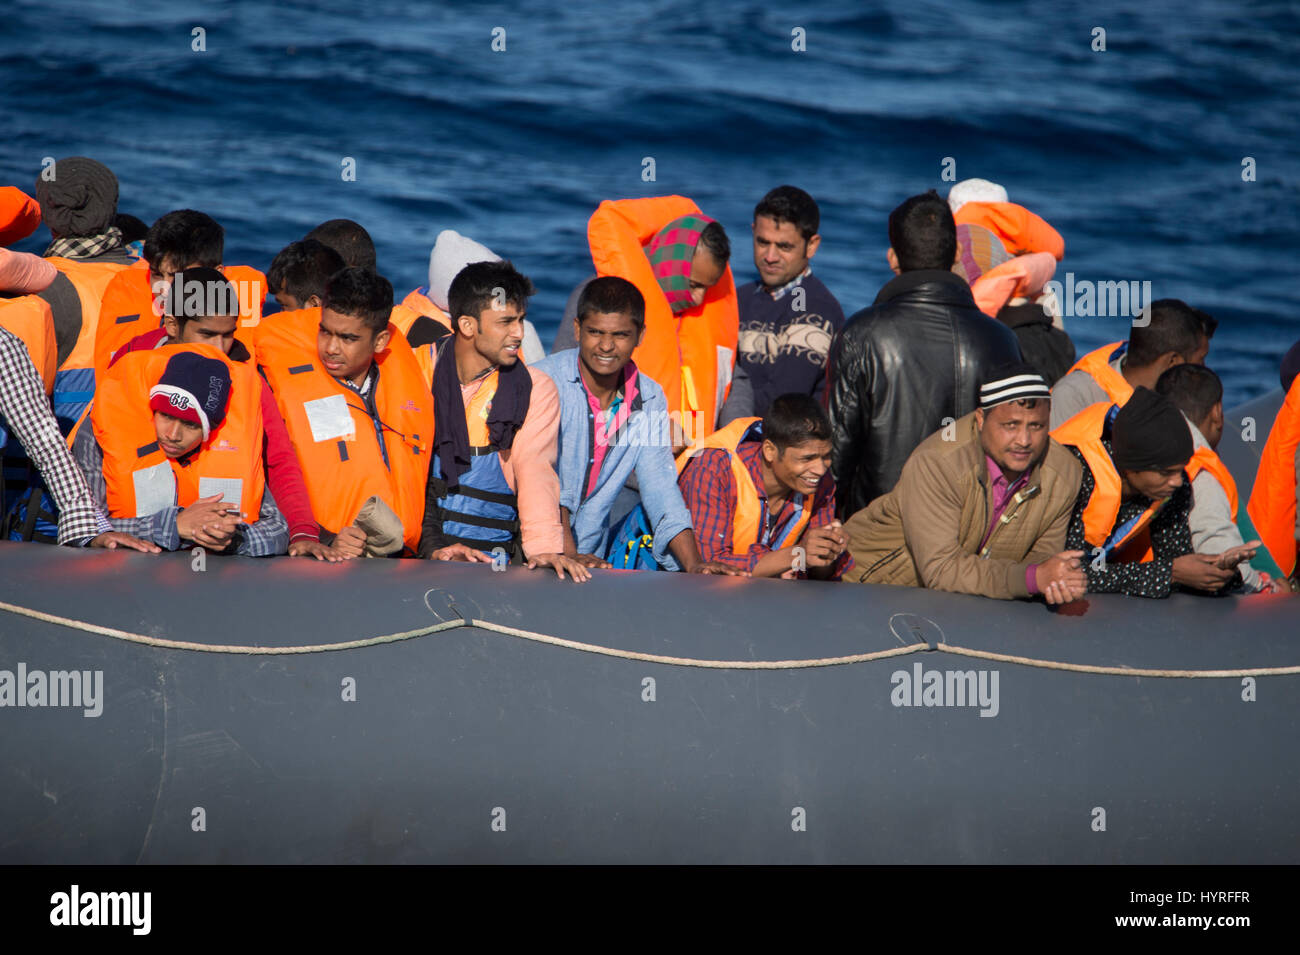 Un rubberboat non navigabilité avec environ 150 personnes à bord au large de la Libye en tentant de traverser la mer Méditerranée à l'Europe. En raison de l'état, whi Banque D'Images